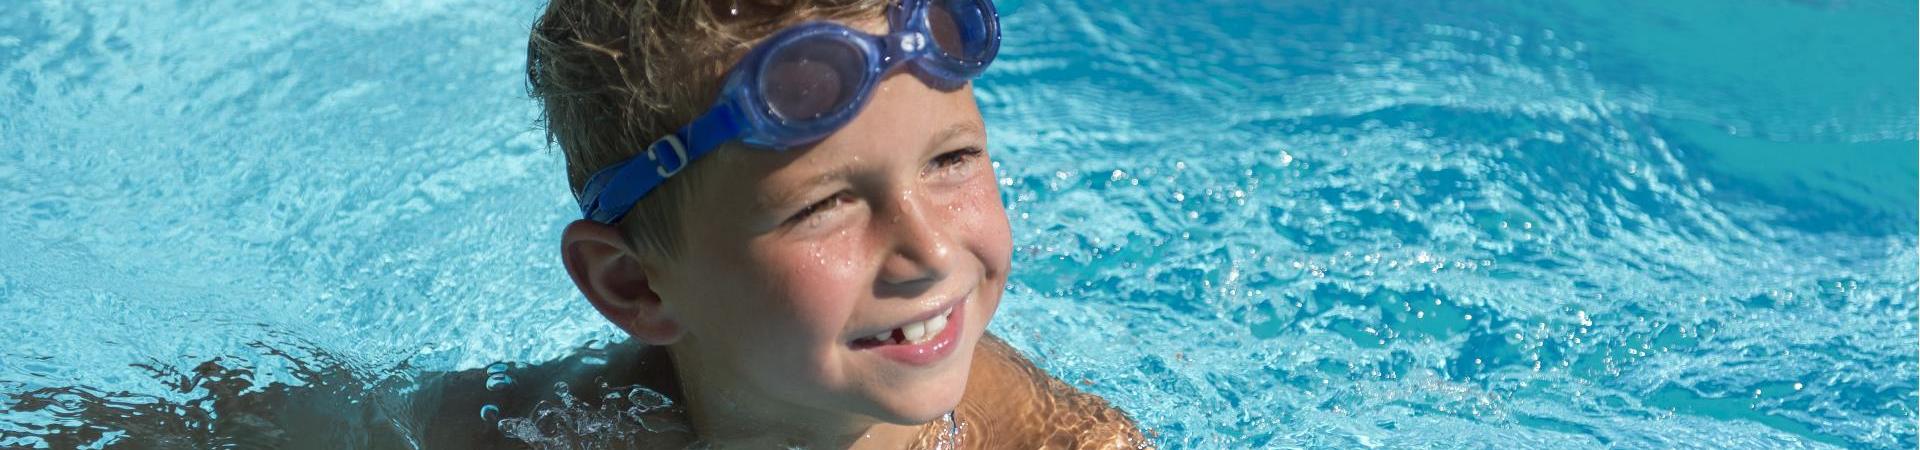 Un bambino che nuota in una piscina